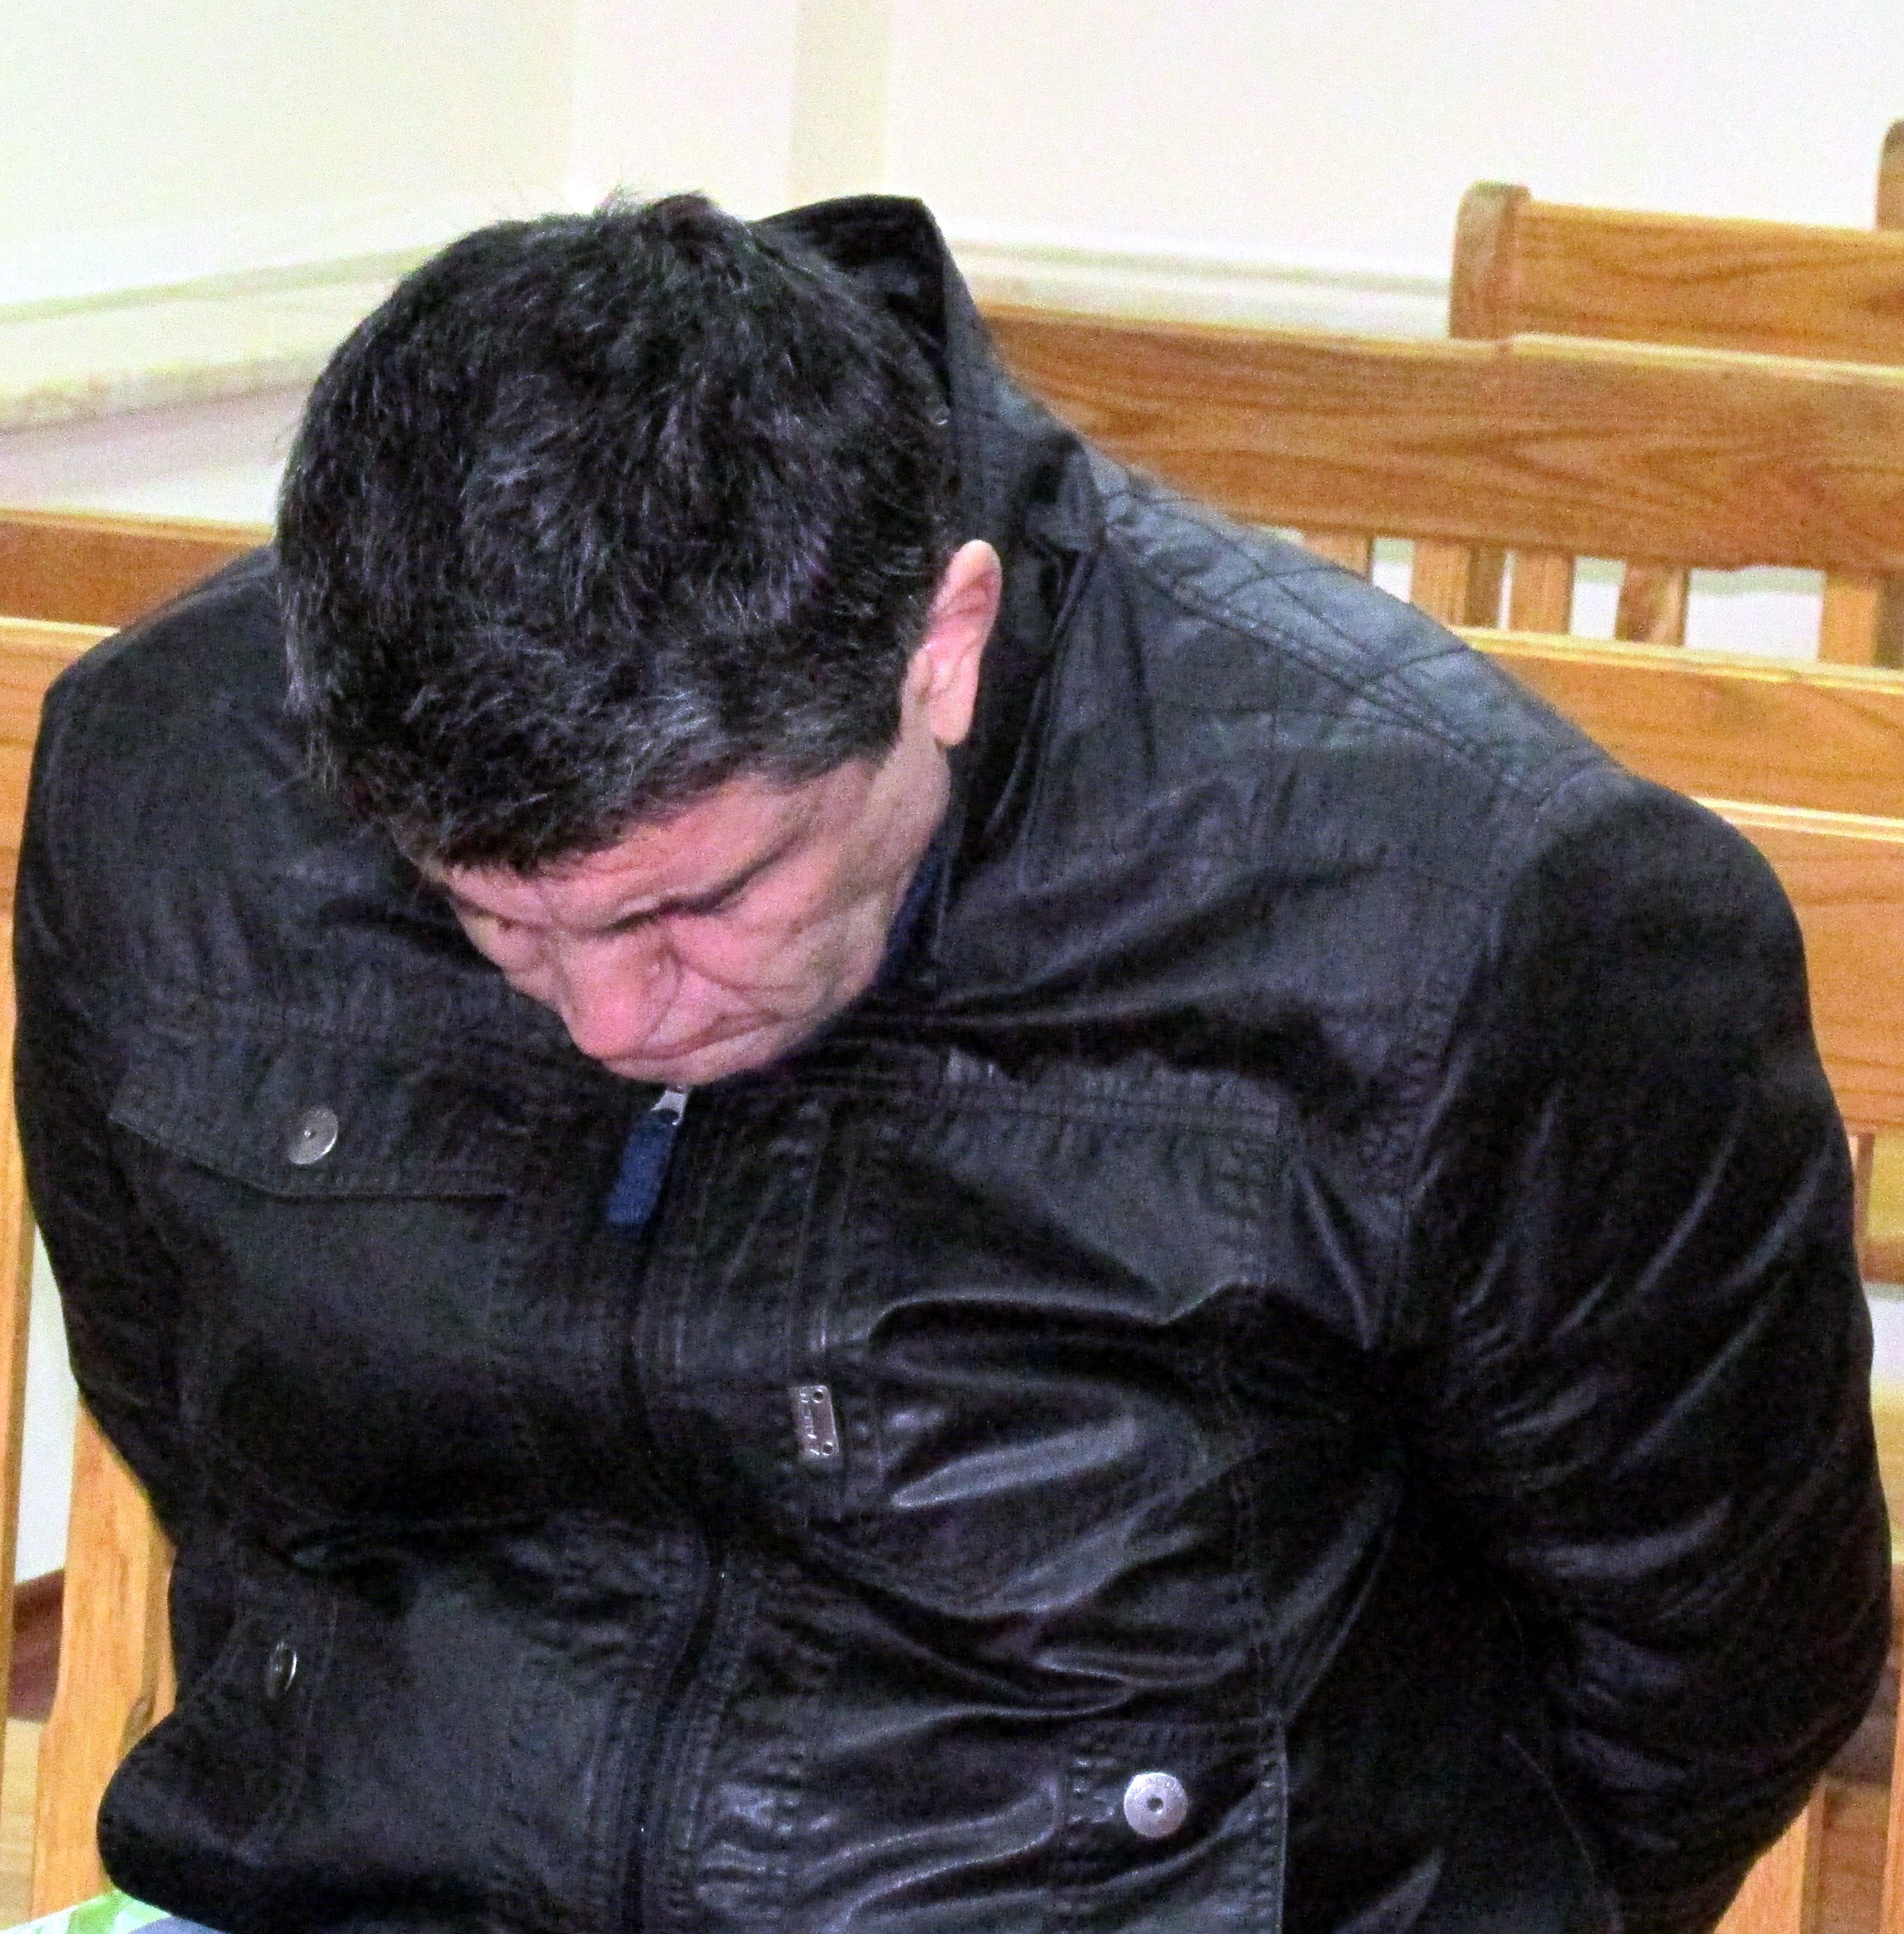 8 г. затвор за учител от Дулово, блудствал с 6 деца